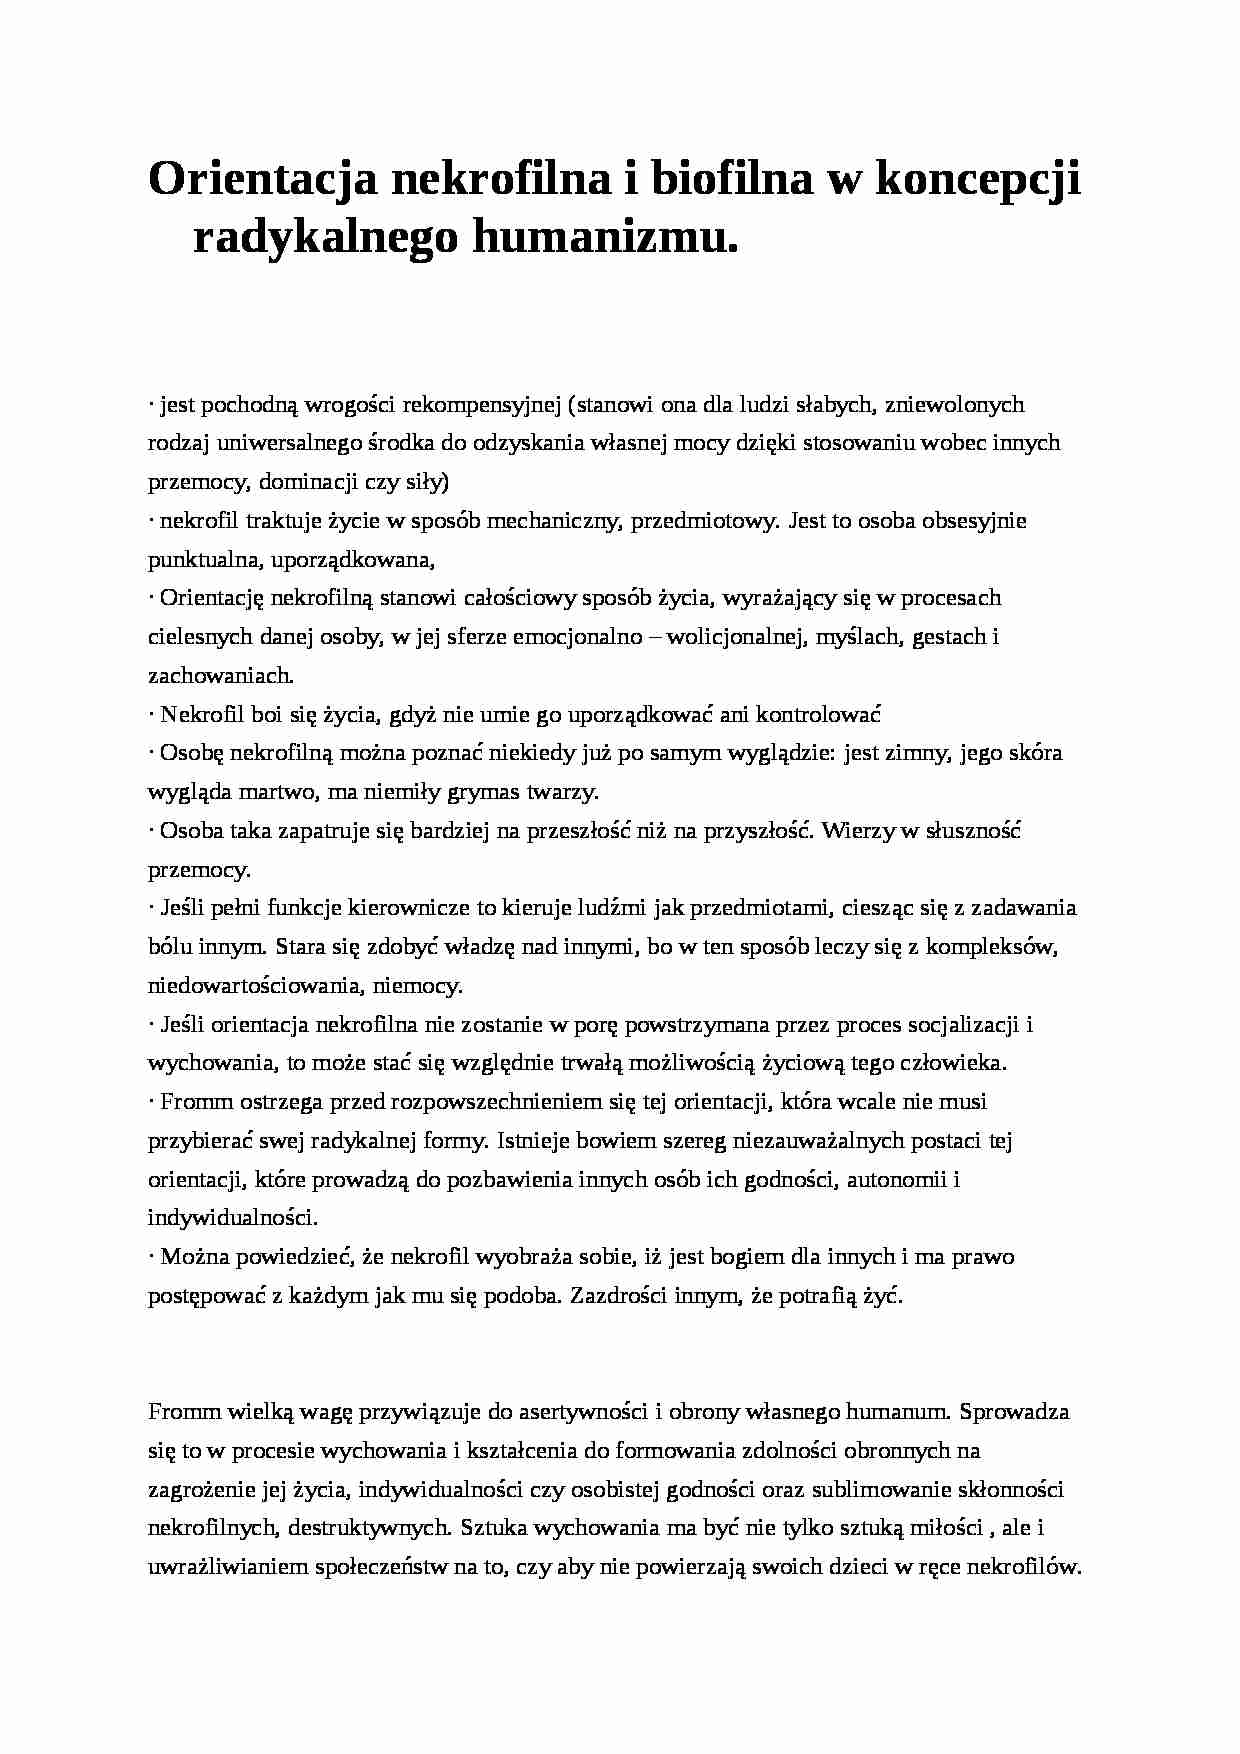 Orientacja nekrofilna i biofilna w koncepcji radykalnego humanizmu- pedagogika - strona 1